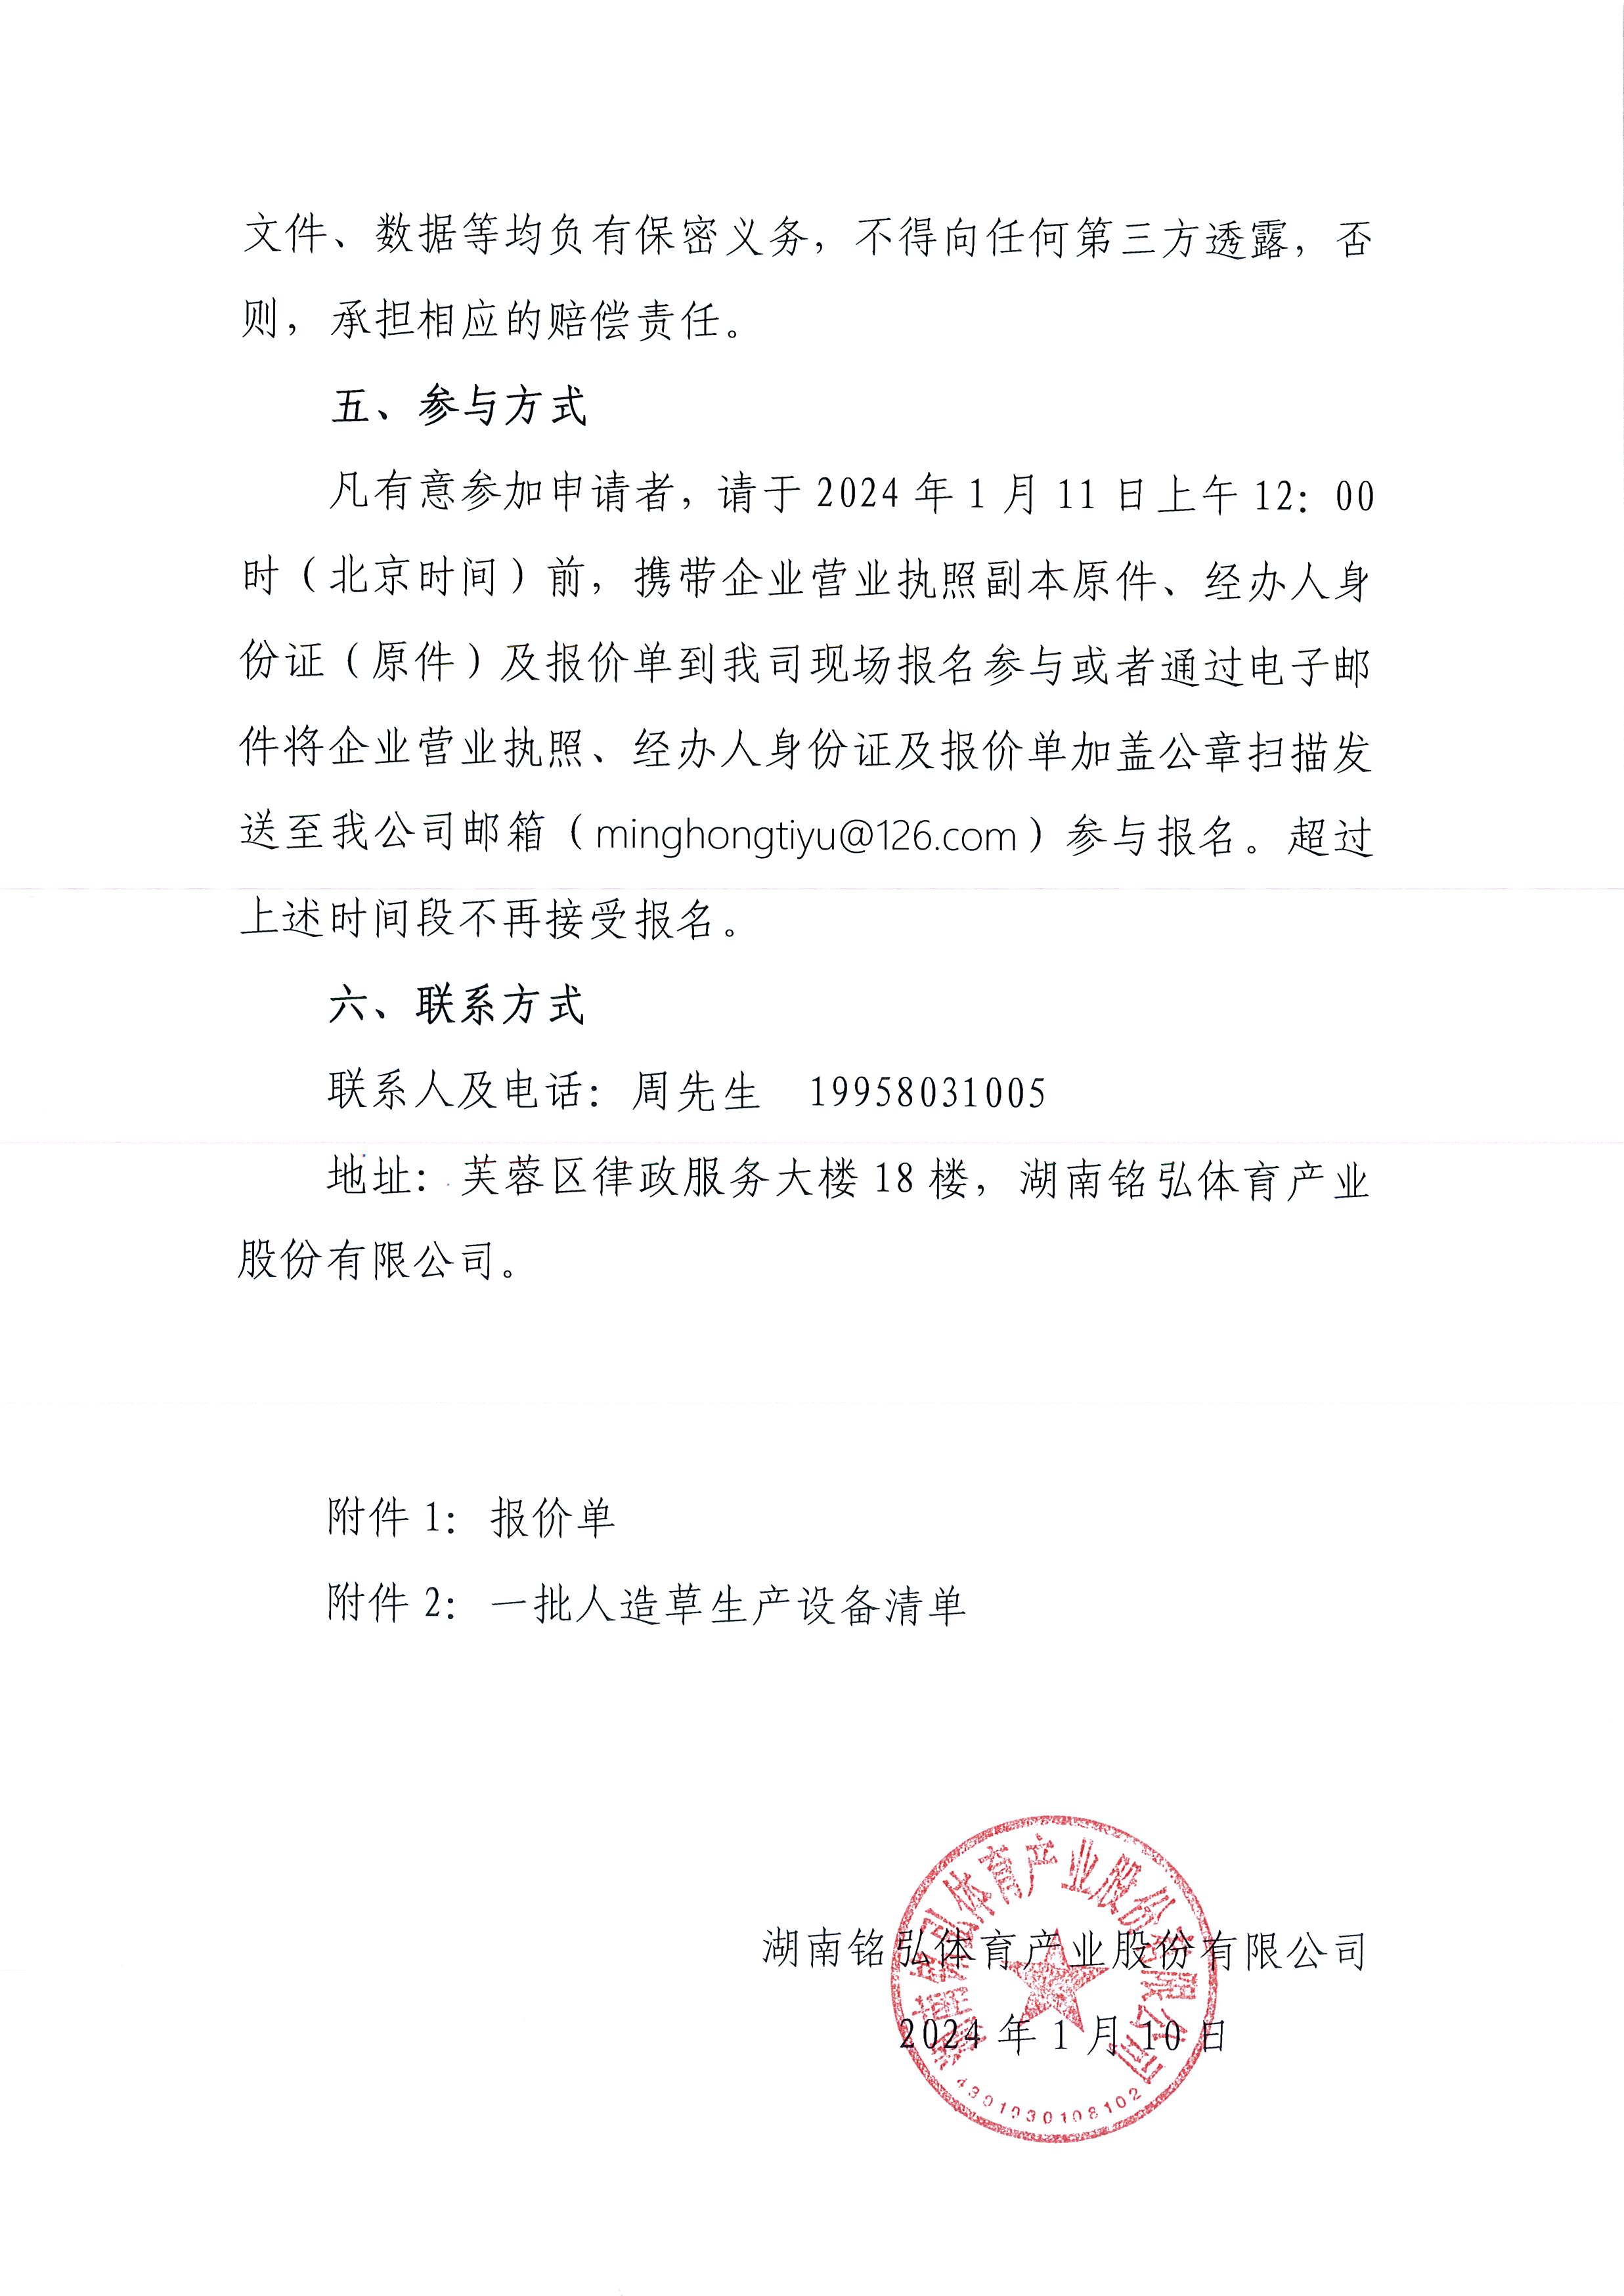 湖南铭弘体育产业股份有限公司关于处置一批人造草生产设备的询价函3